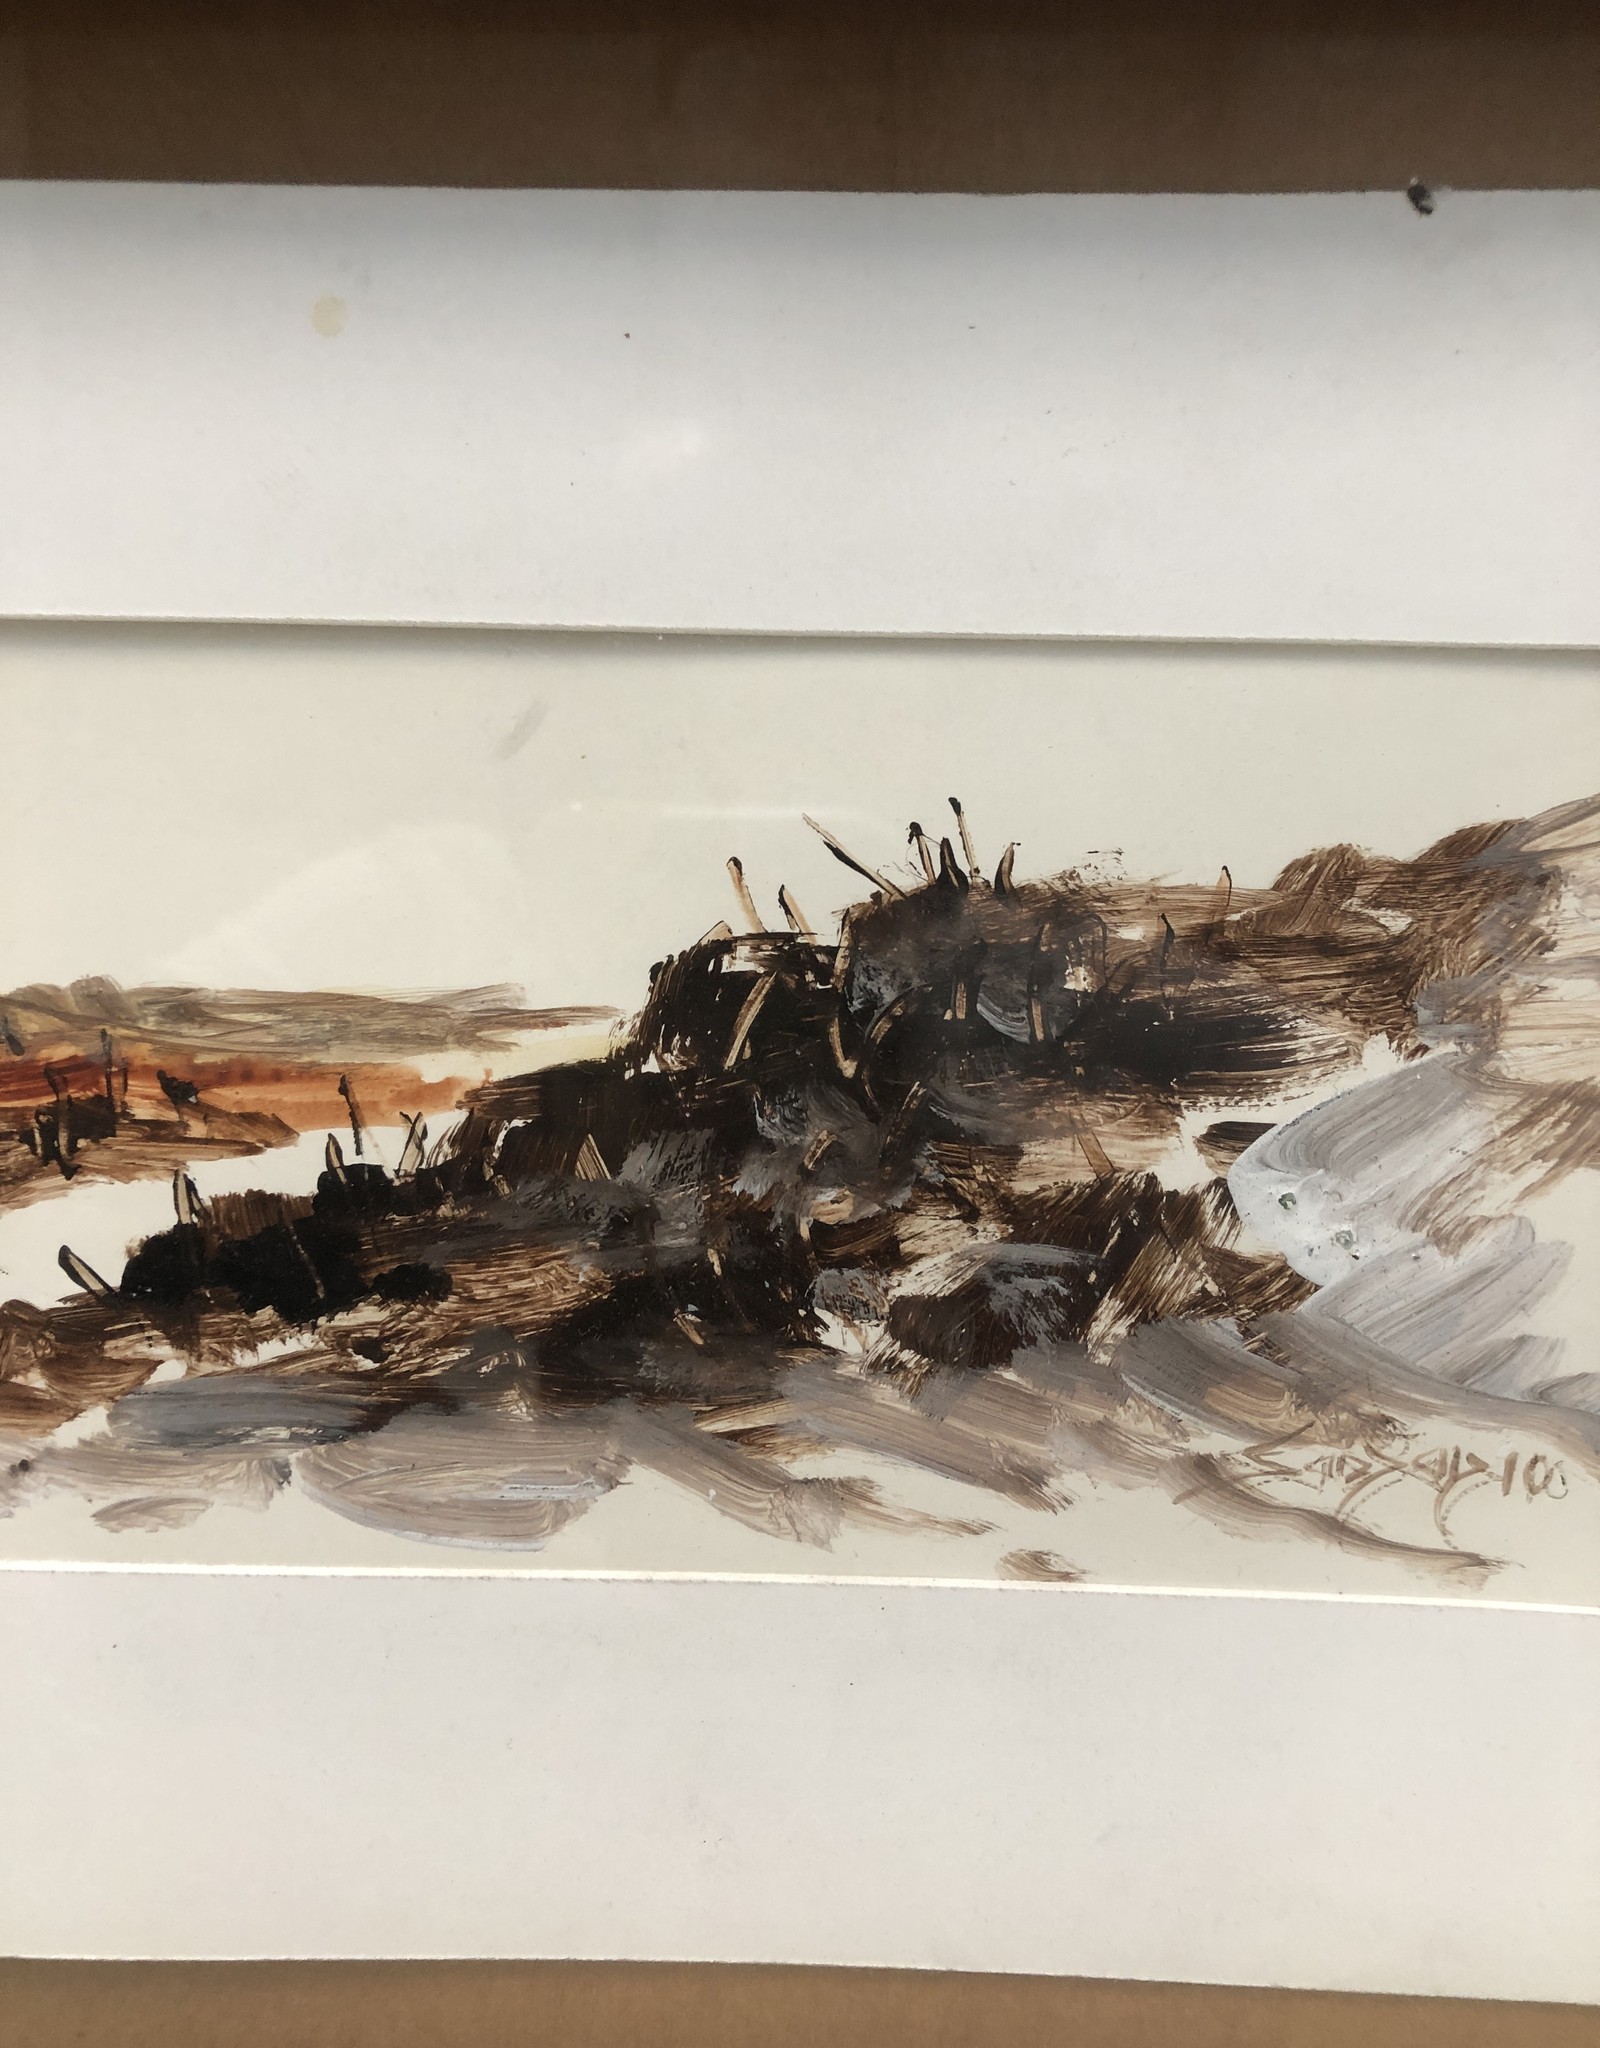 Moving Landscapes, Oil on Paper